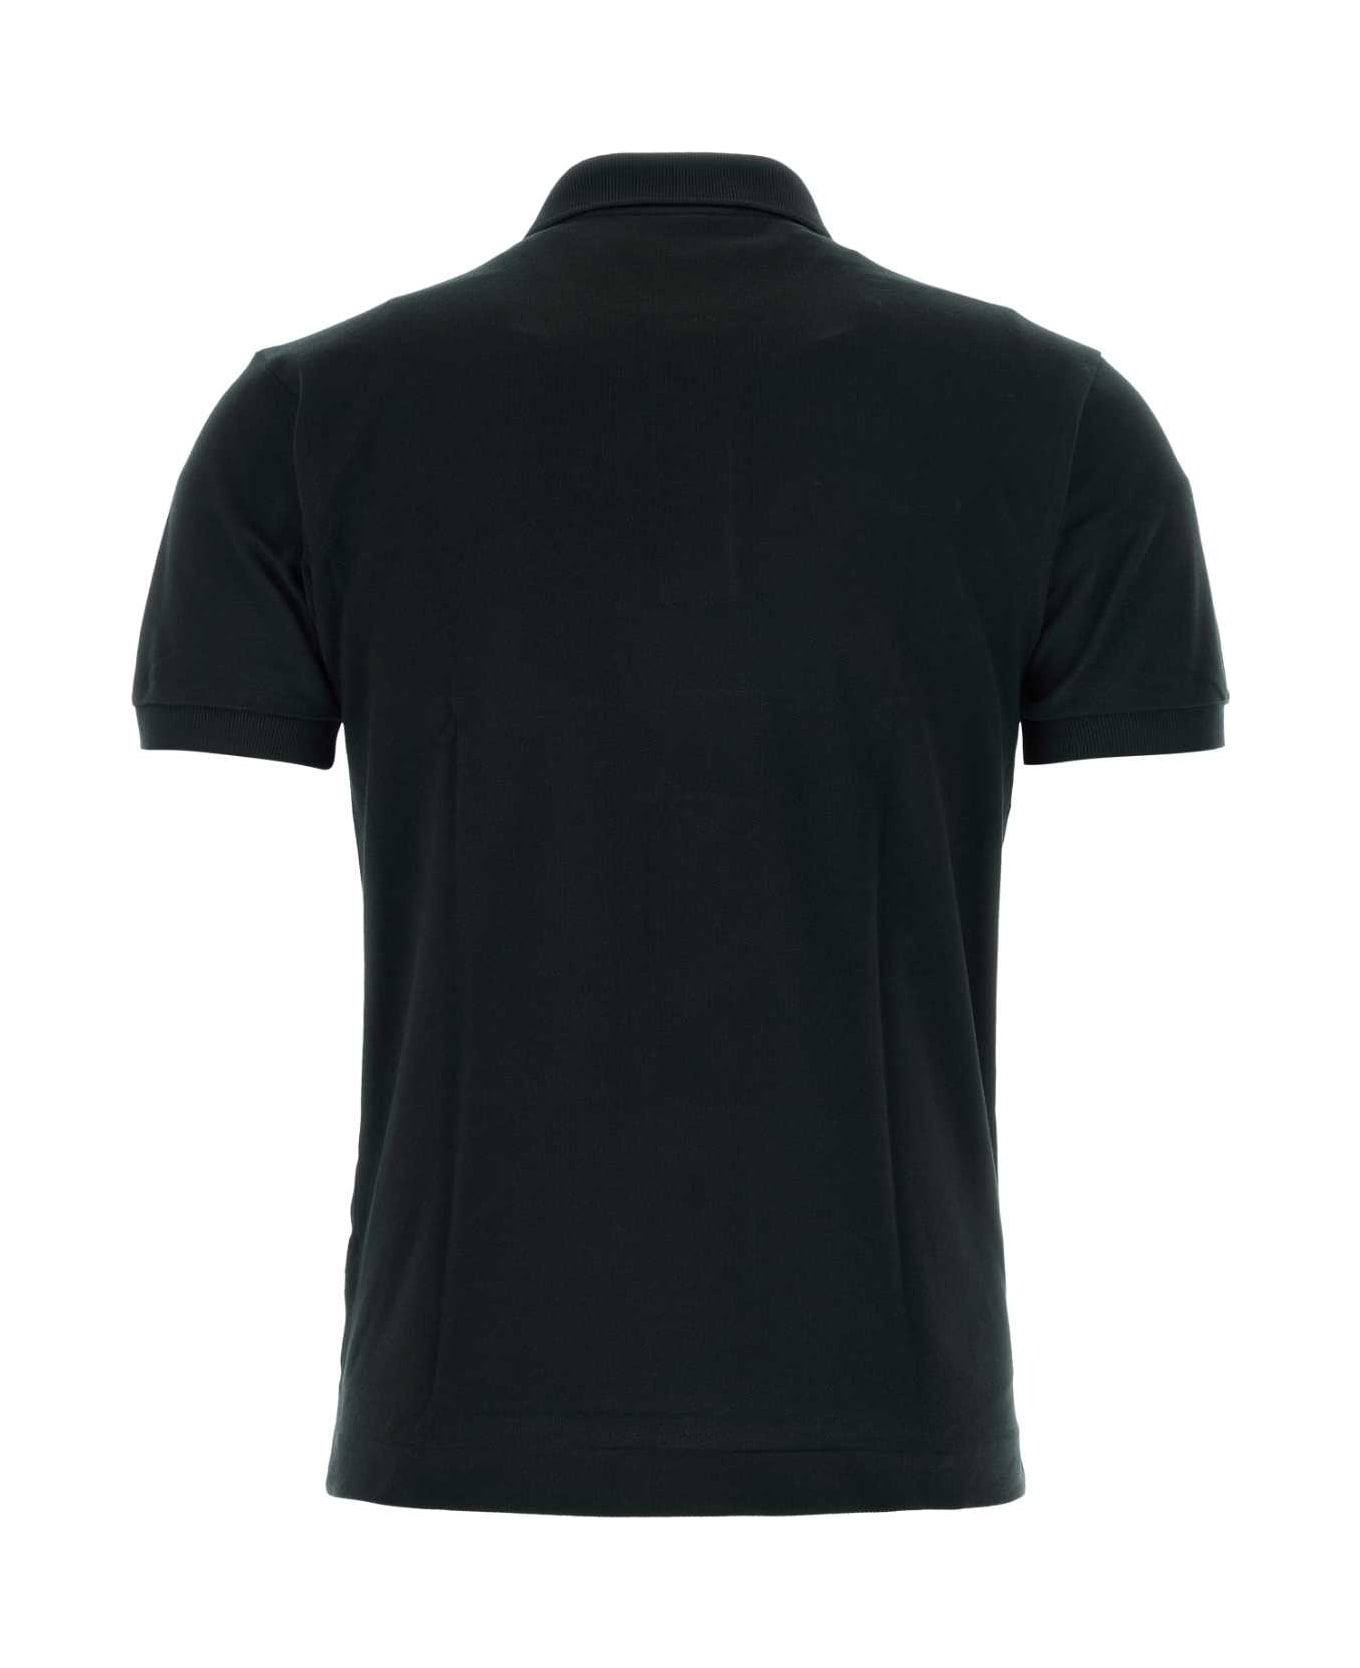 Lacoste Black Piquet Polo Shirt - 031